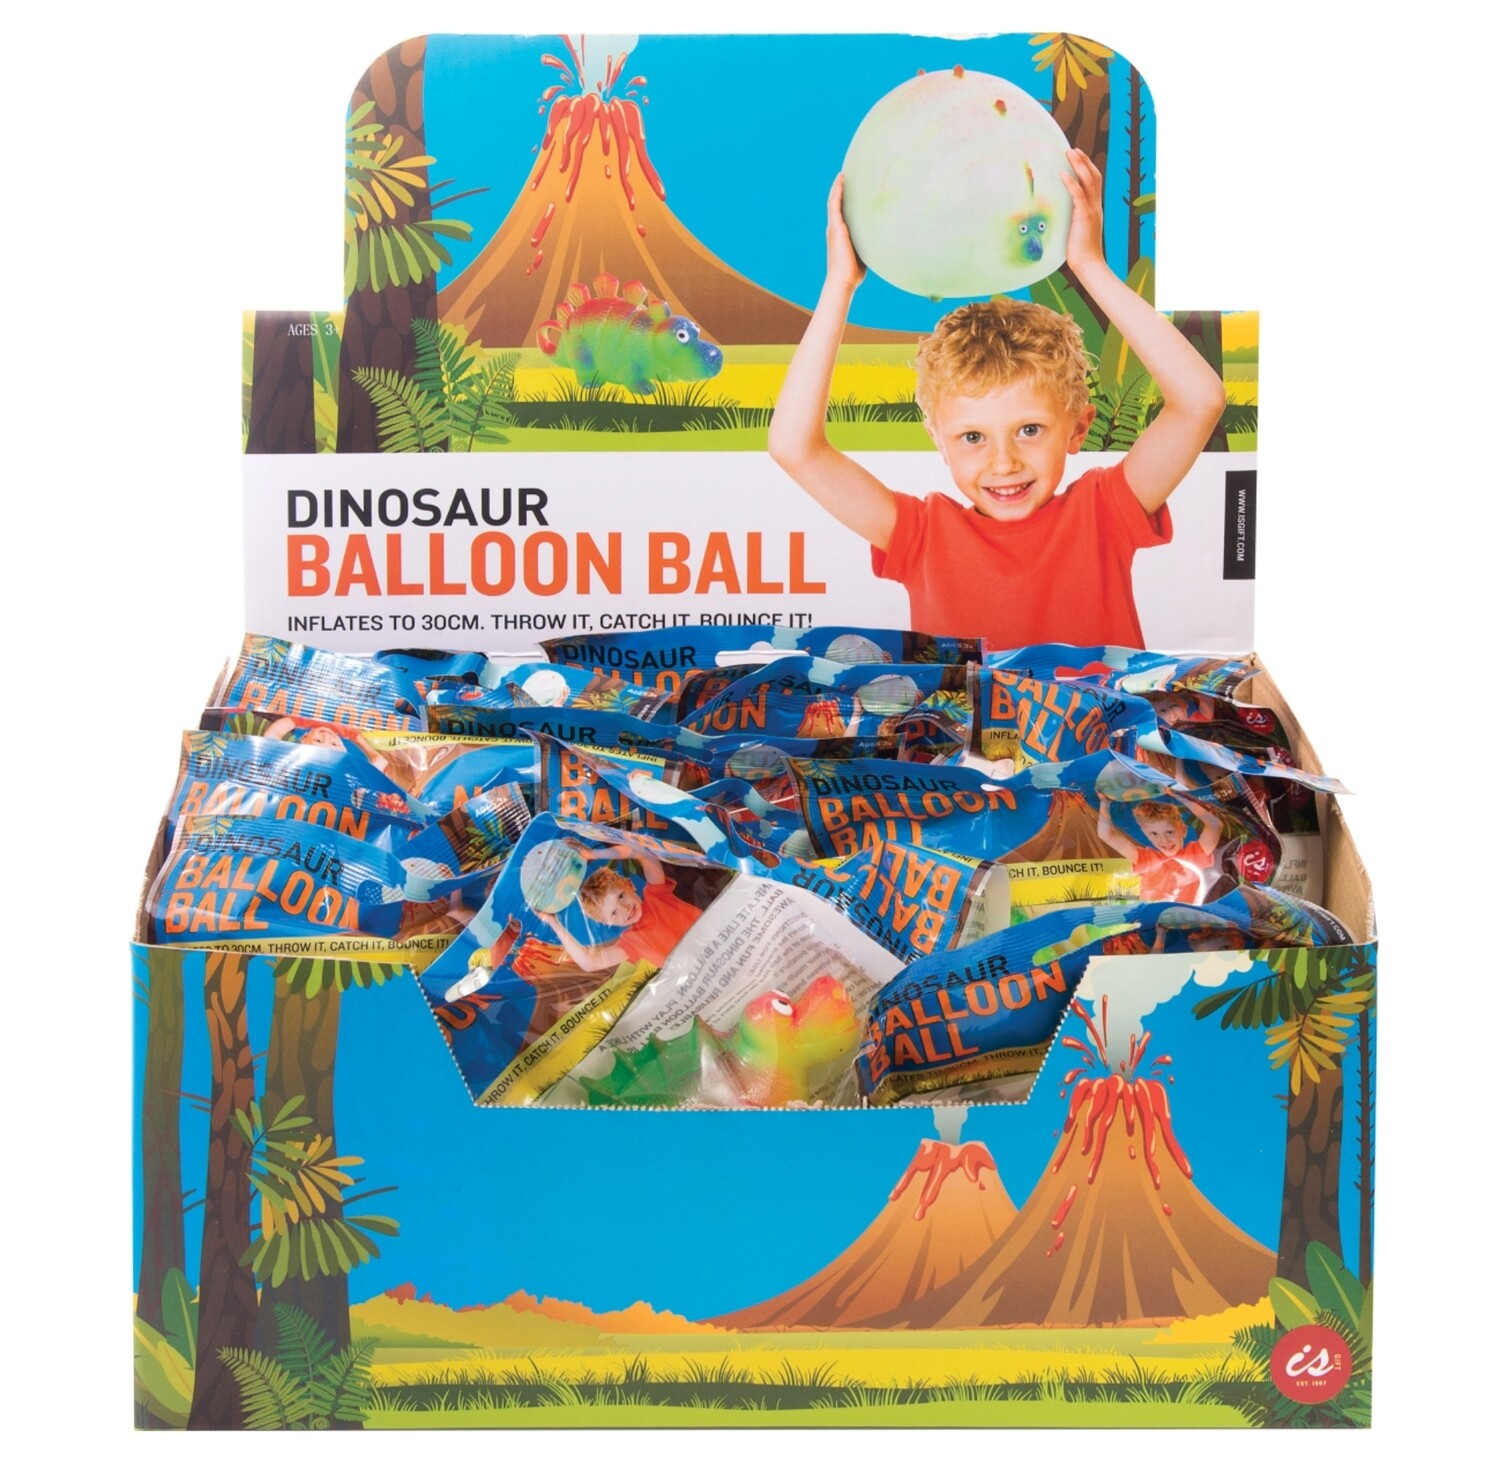 Dinosaur Balloon Ball